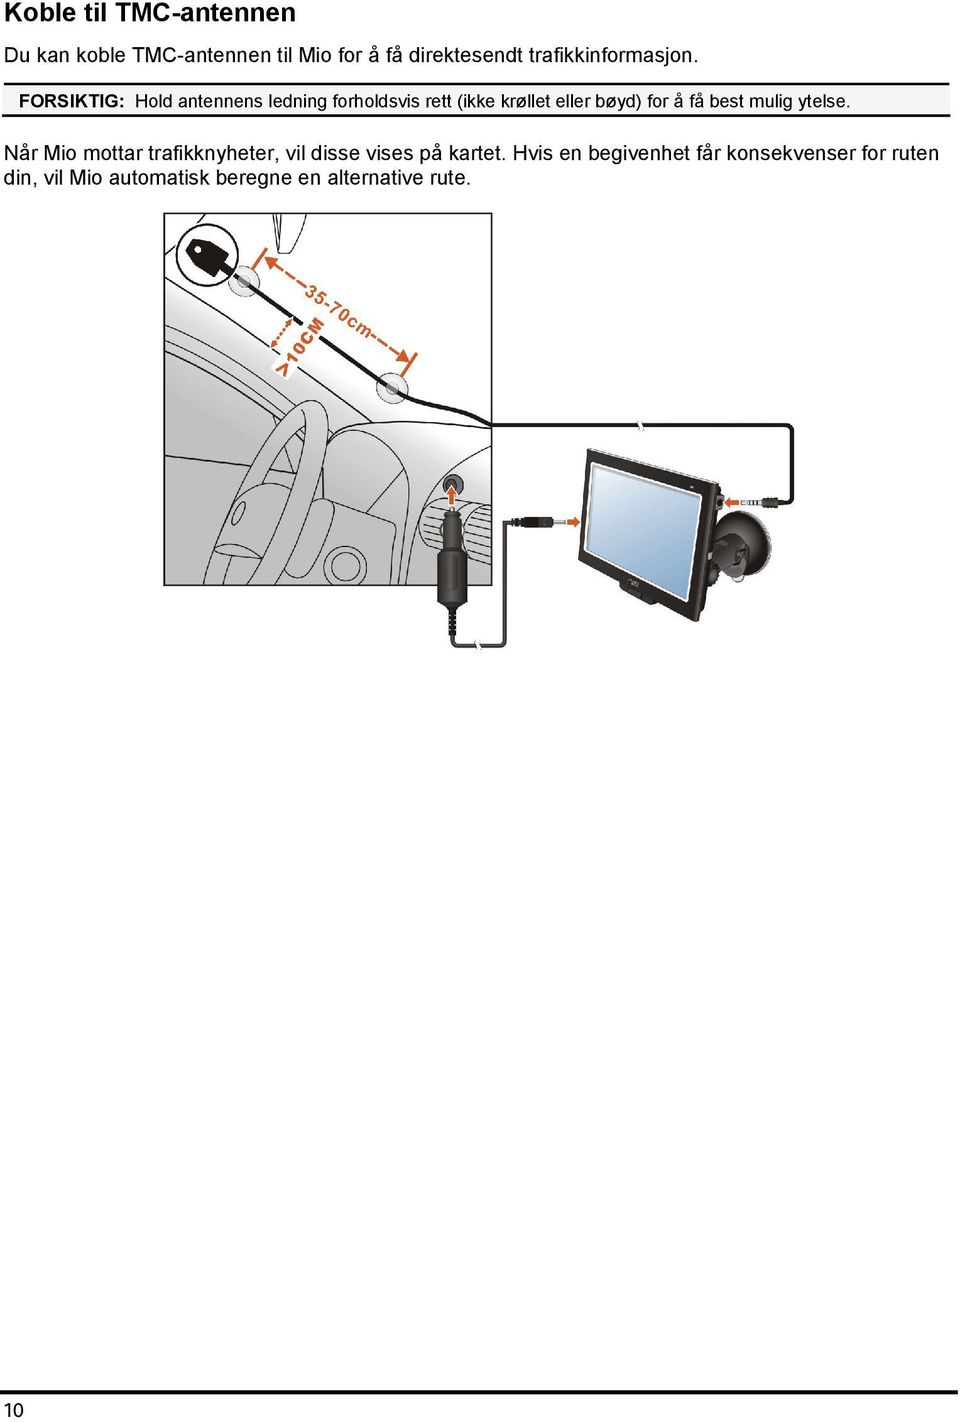 FORSIKTIG: Hold antennens ledning forholdsvis rett (ikke krøllet eller bøyd) for å få best